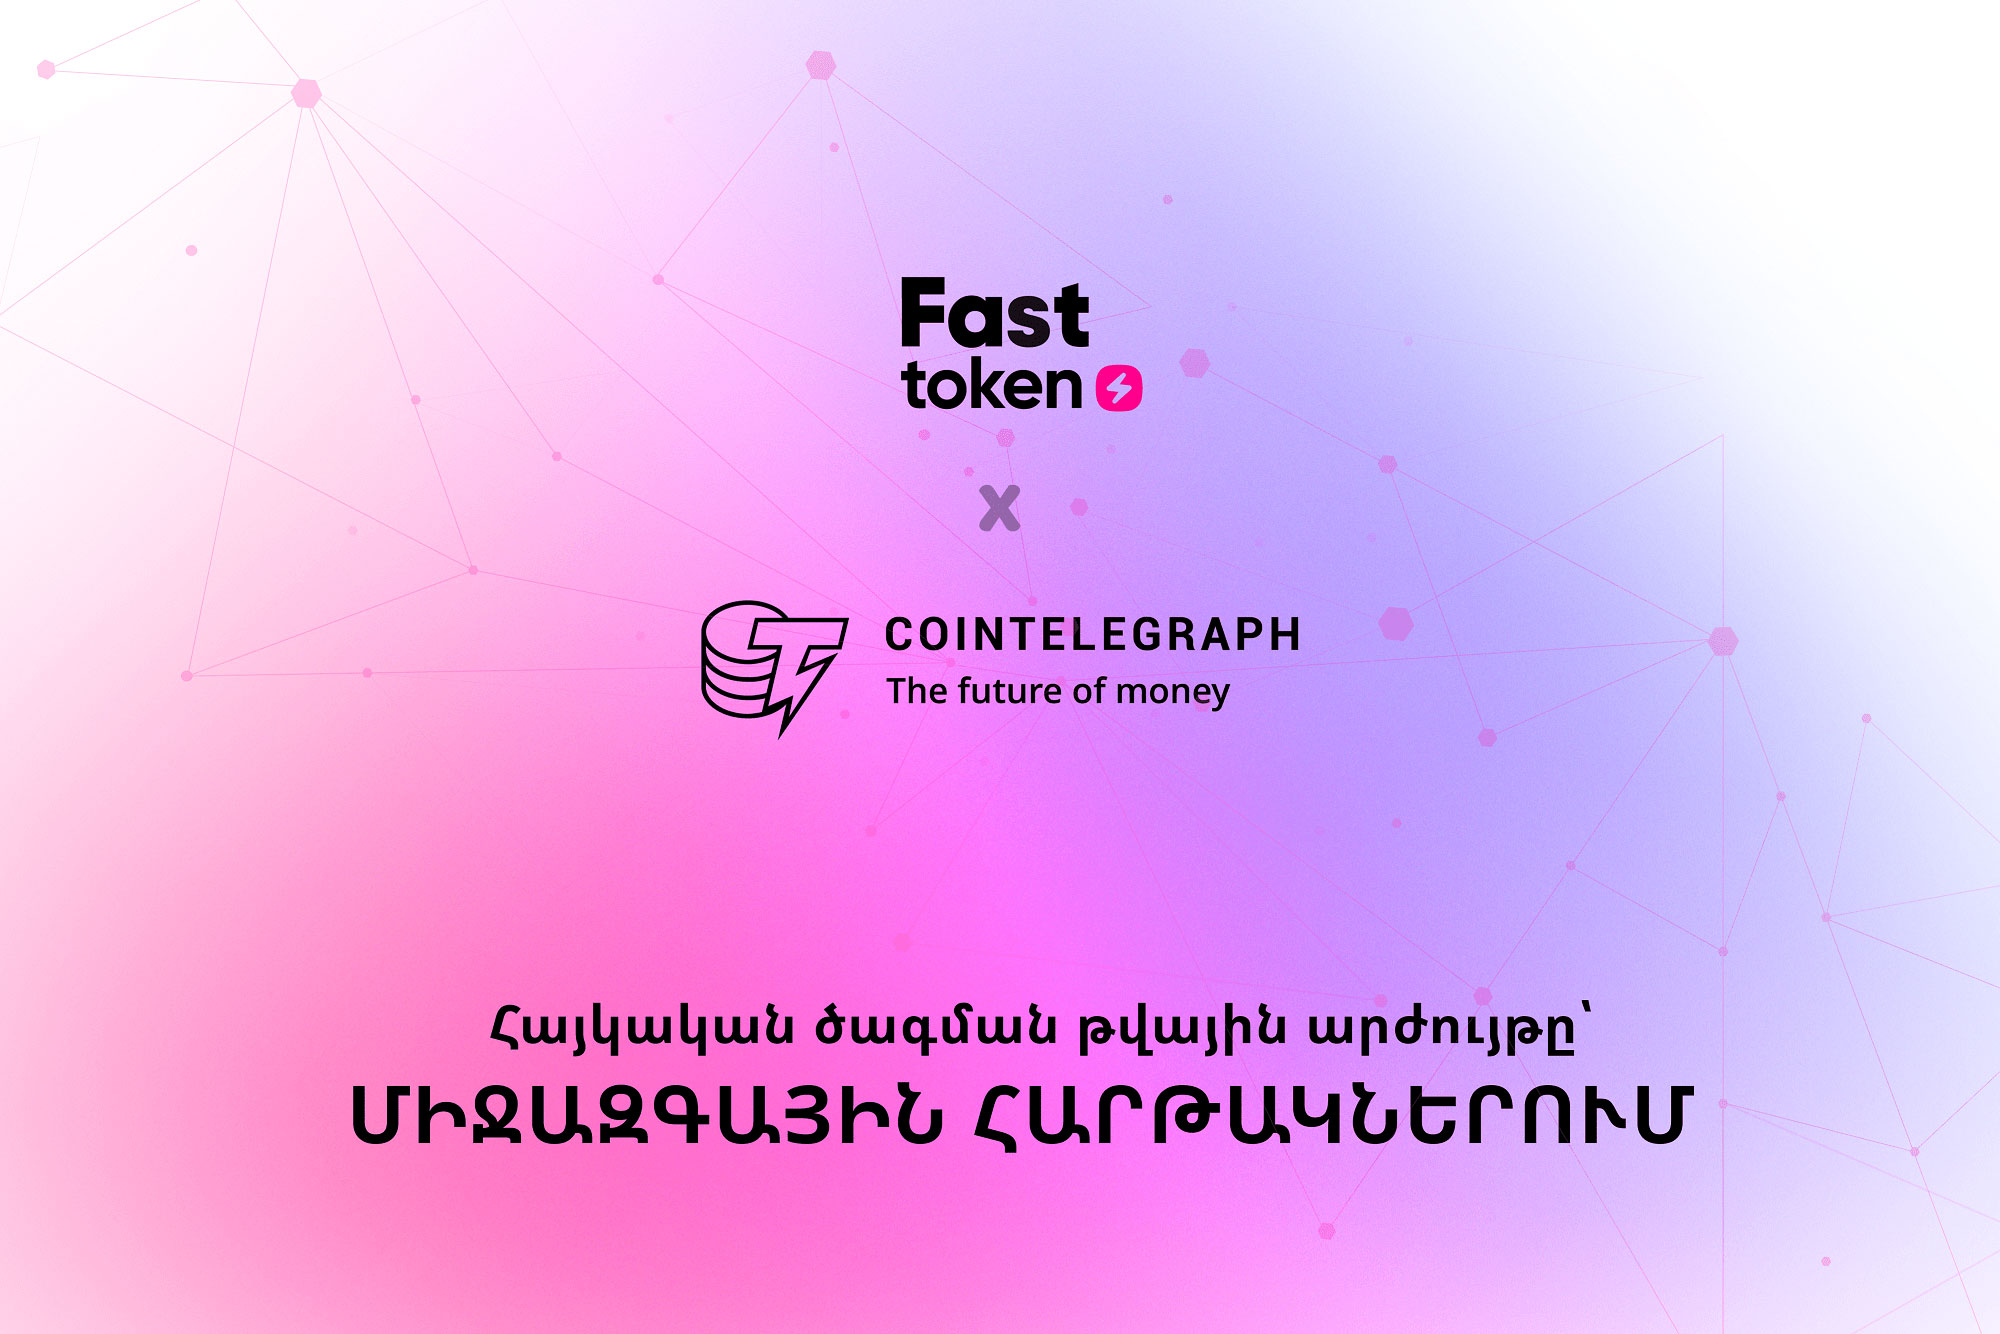 Cointelegraph հռչակավոր կայքի անդրադարձը Fasttoken-ի հանրային վաճառքին